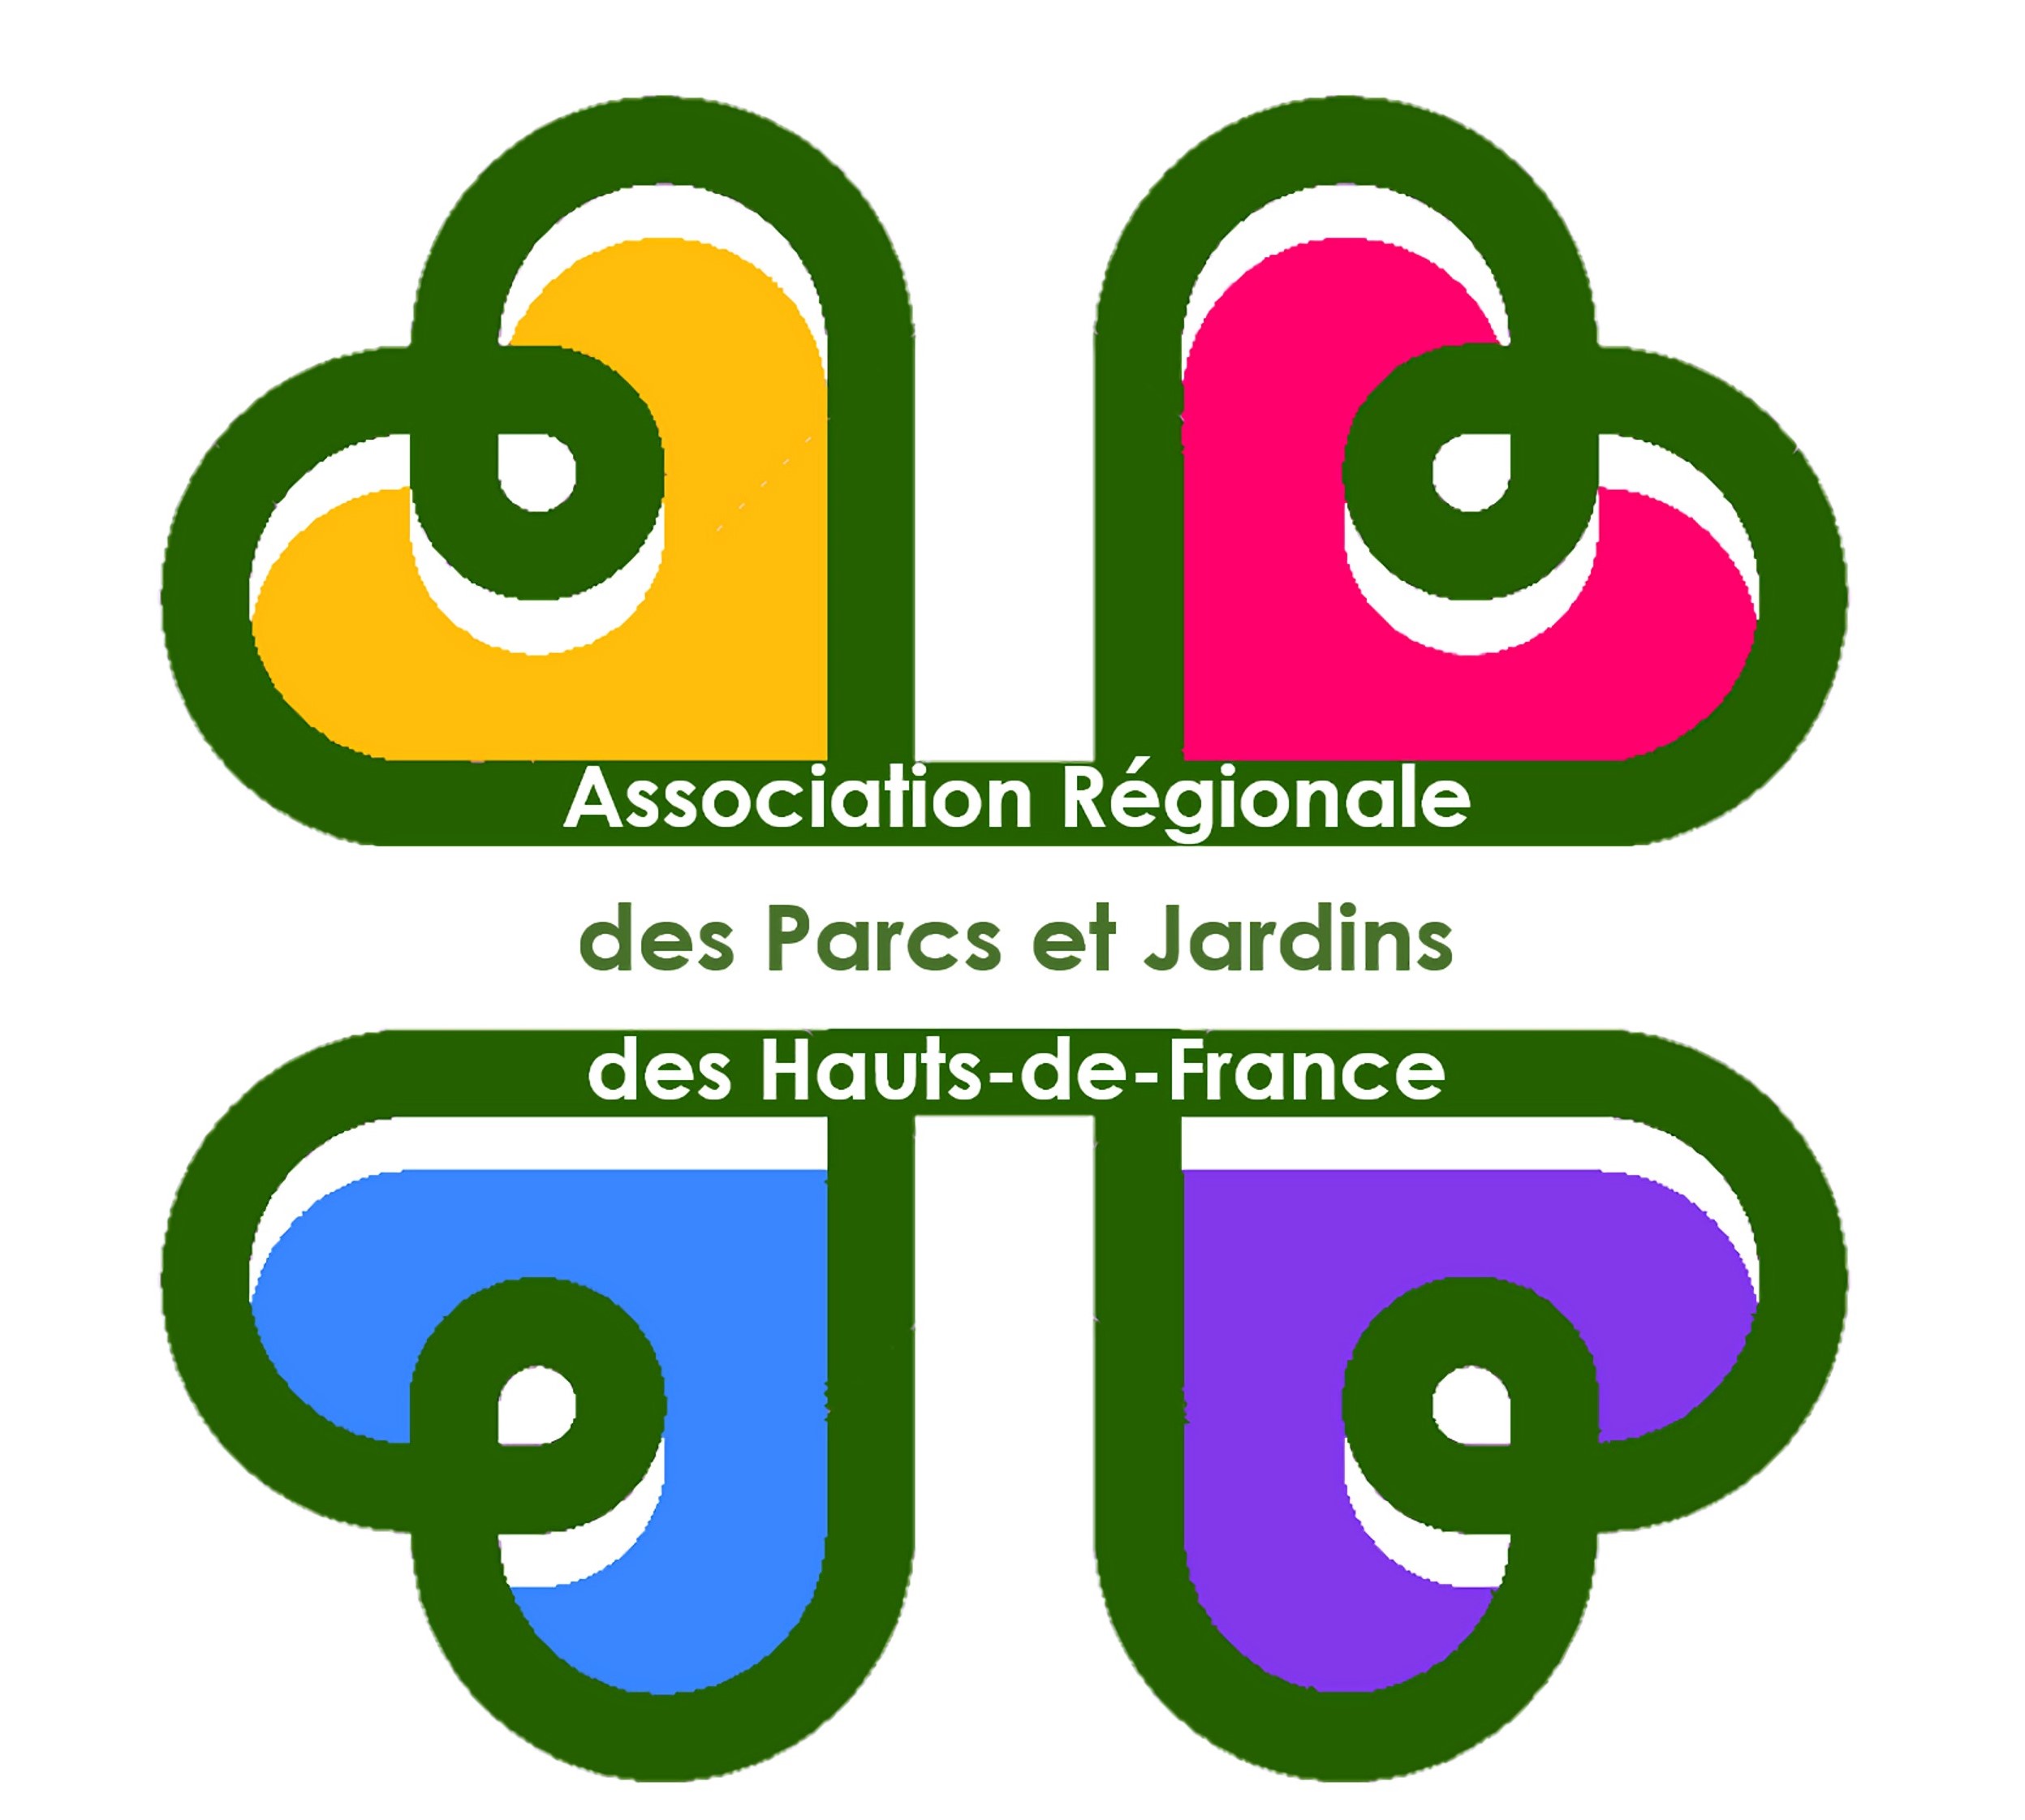 Parcs et Jardins des Hauts-de-France (Association Régionale des)